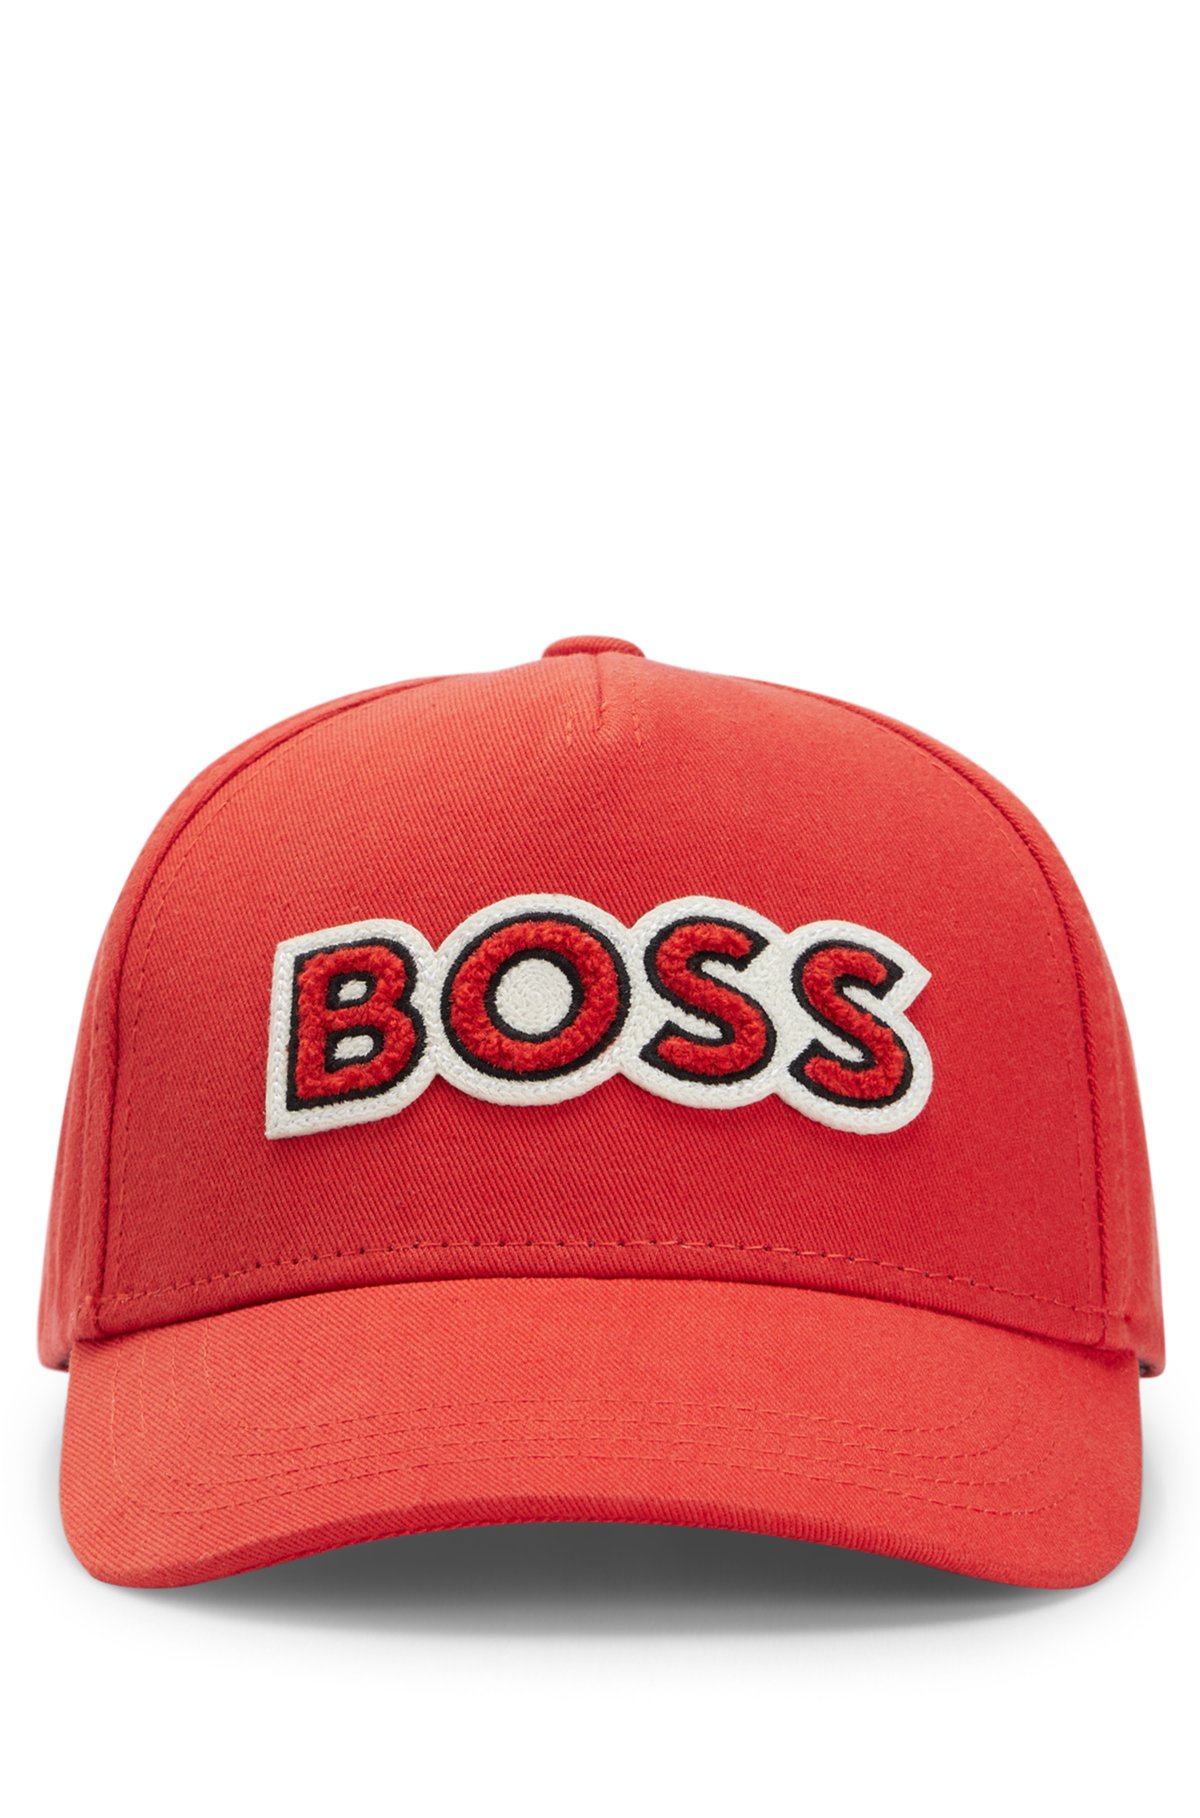 cotton-twill with BOSS cap logo Alica x Schmidt BOSS - patch